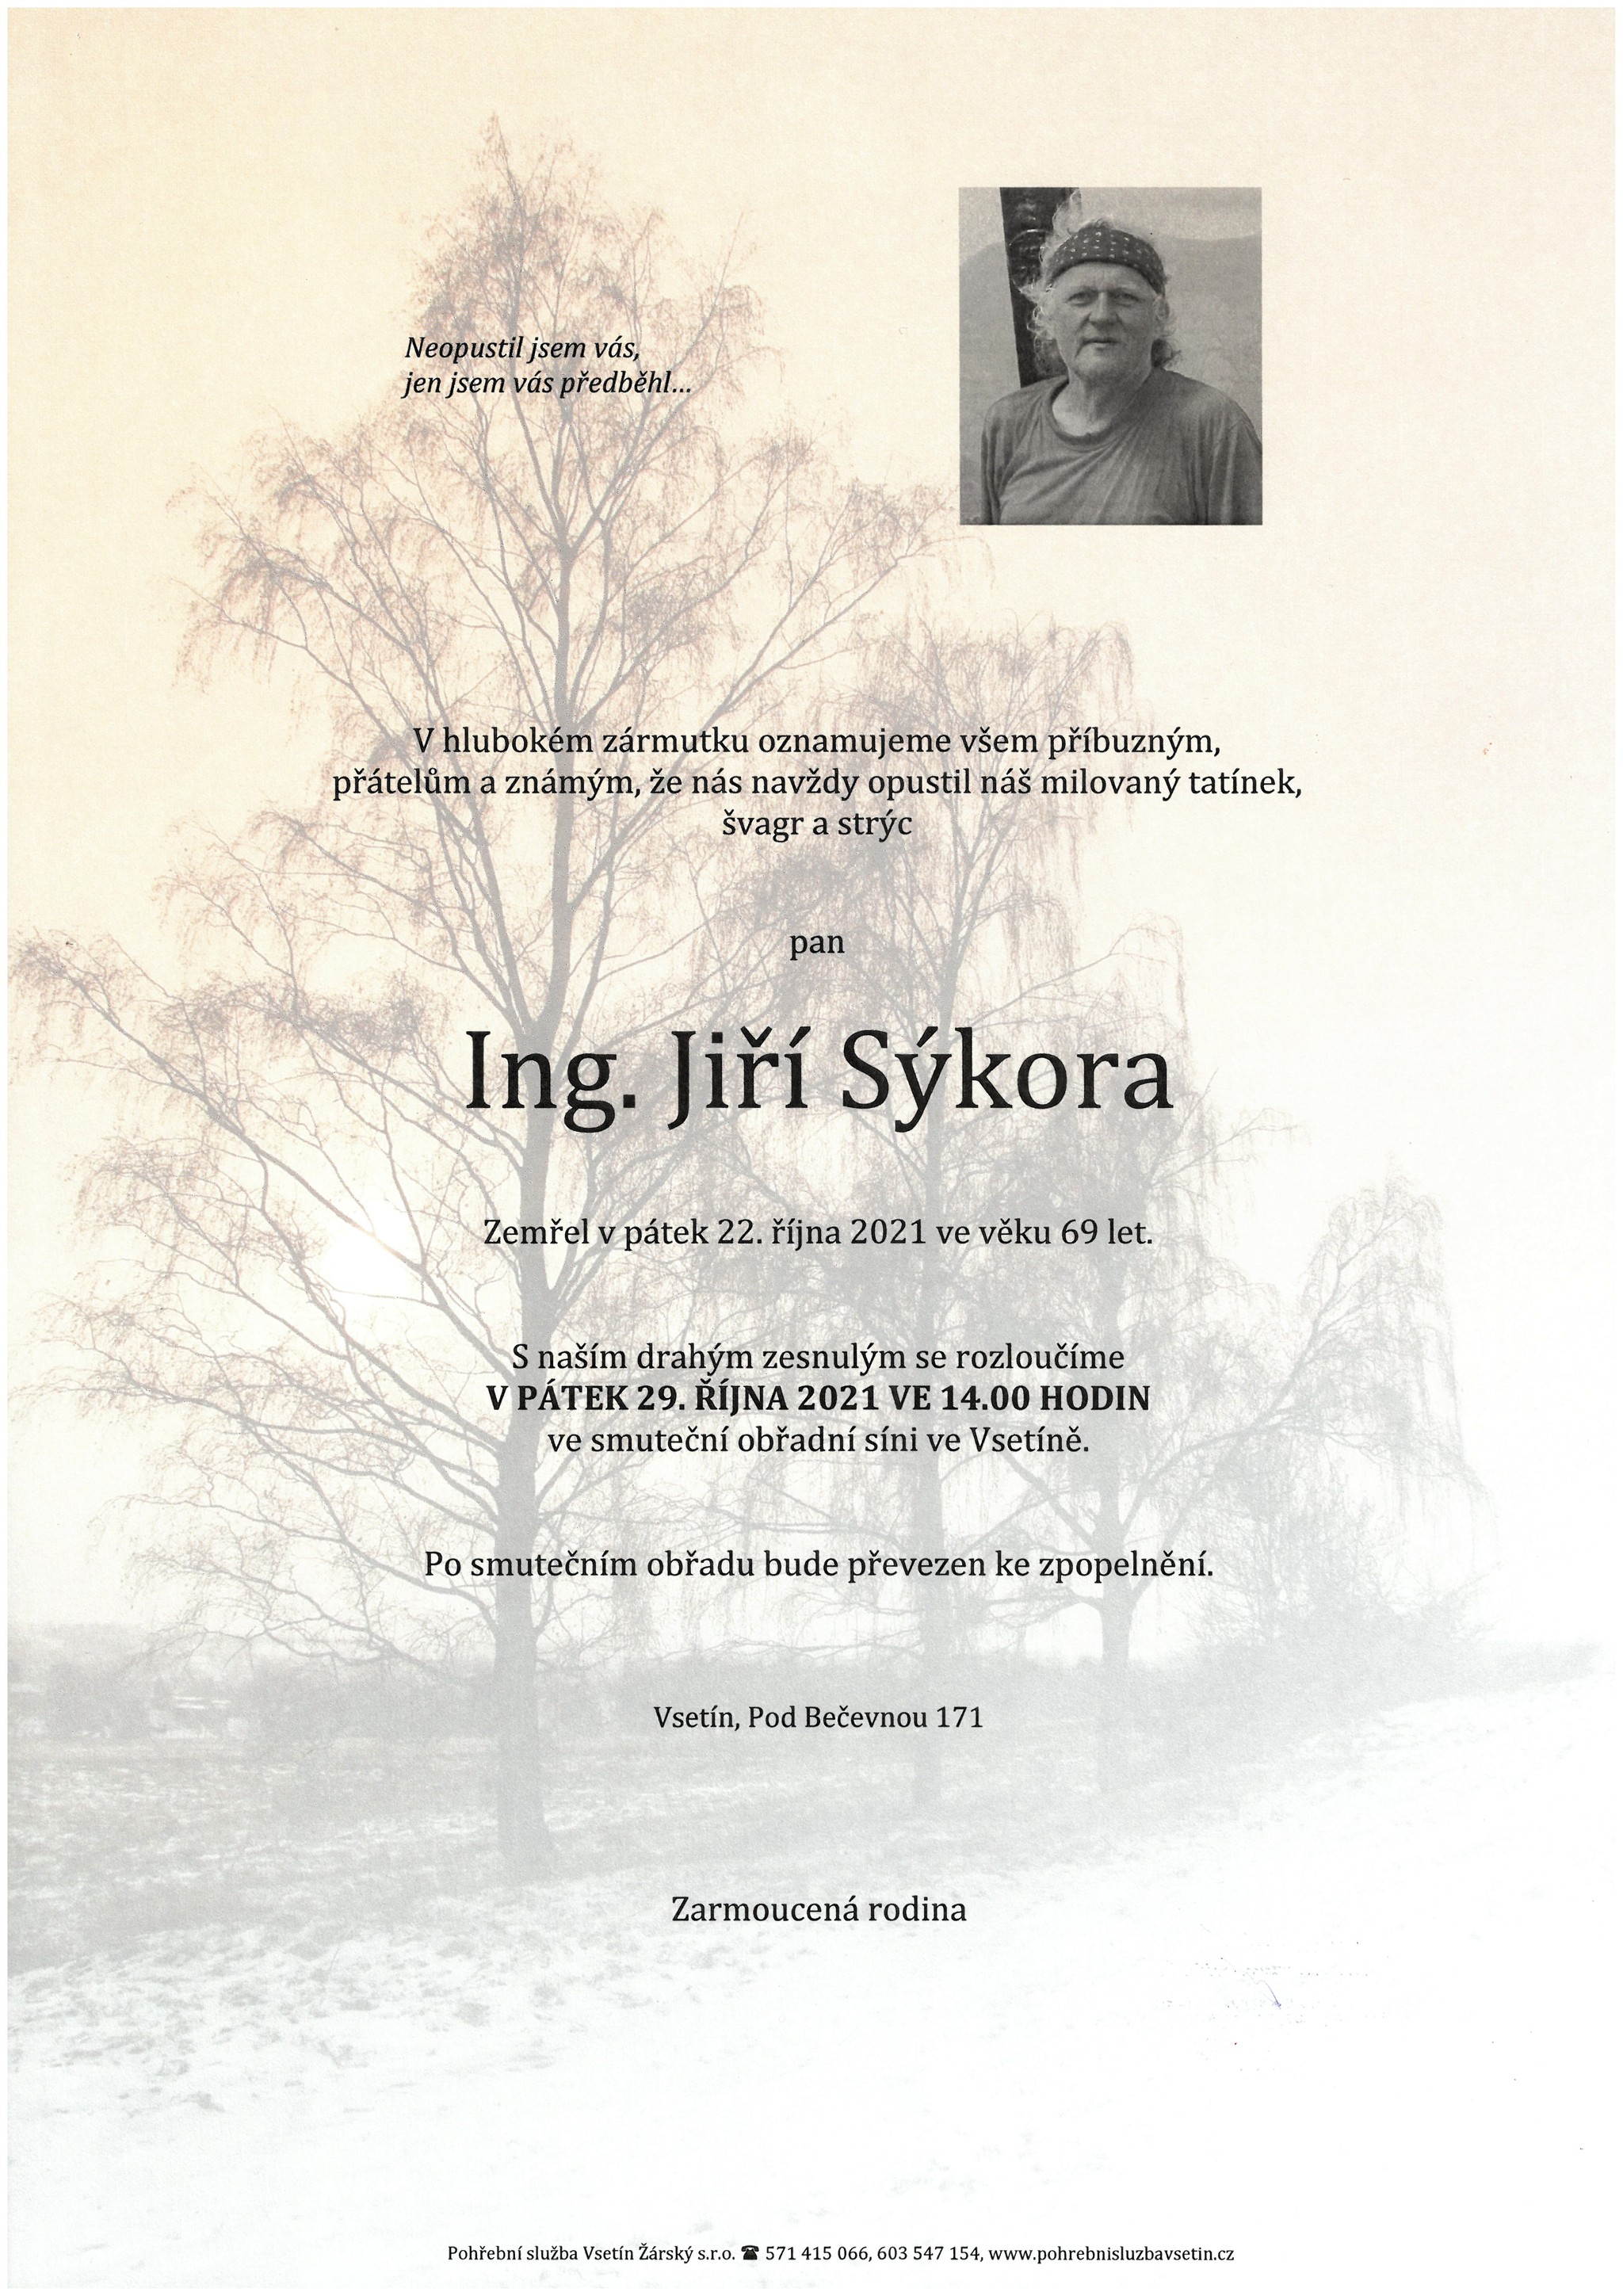 Ing. Jiří Sýkora